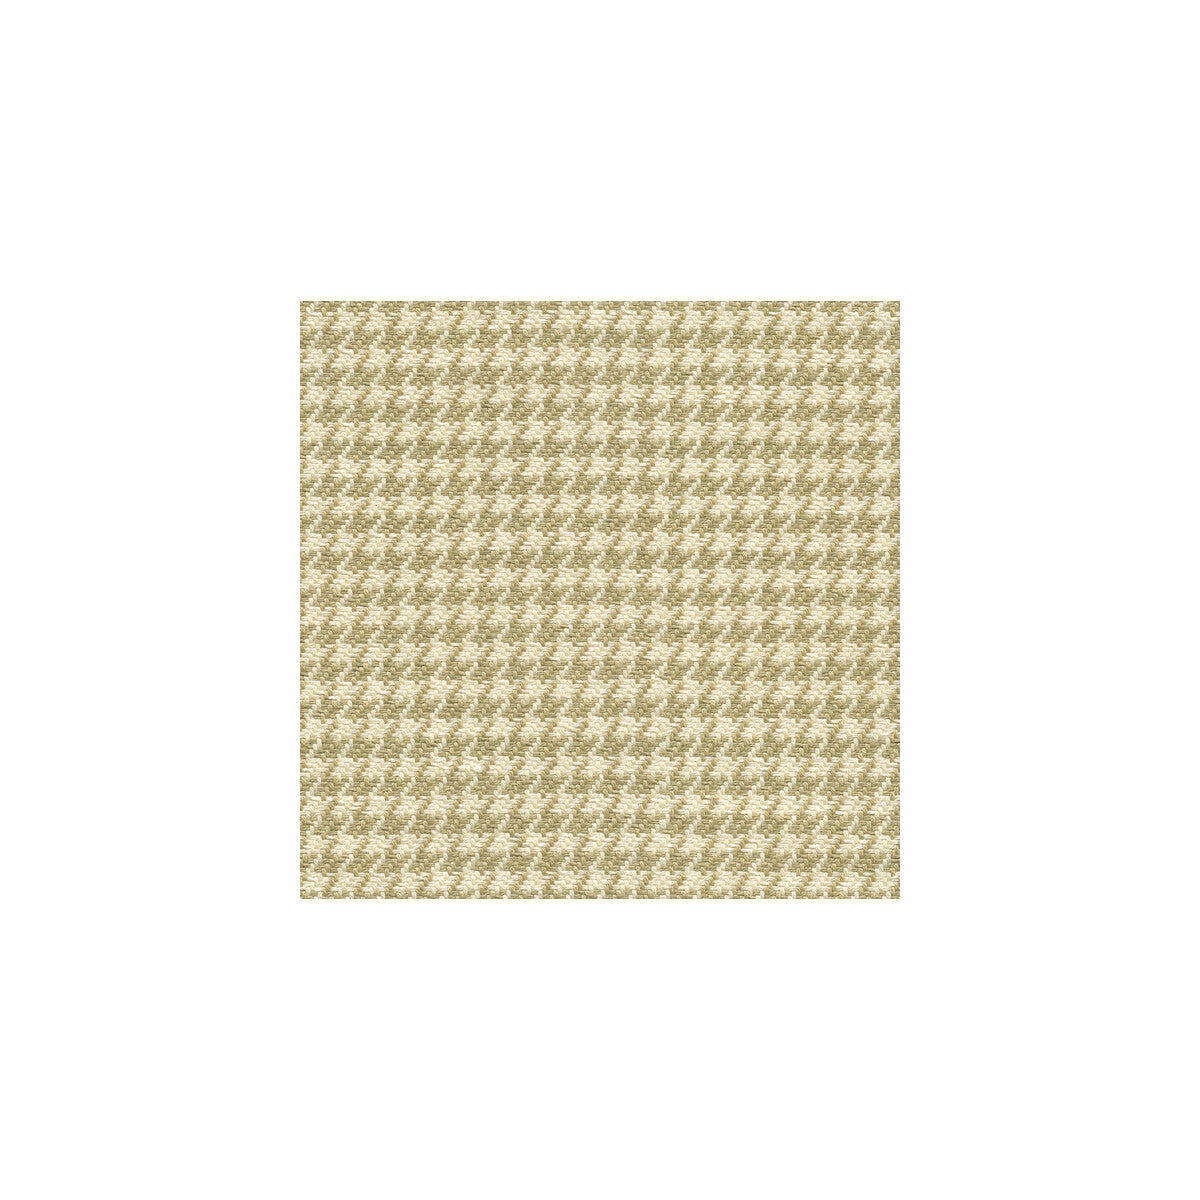 Kravet Basics fabric in 25086-606 color - pattern 25086.606.0 - by Kravet Basics